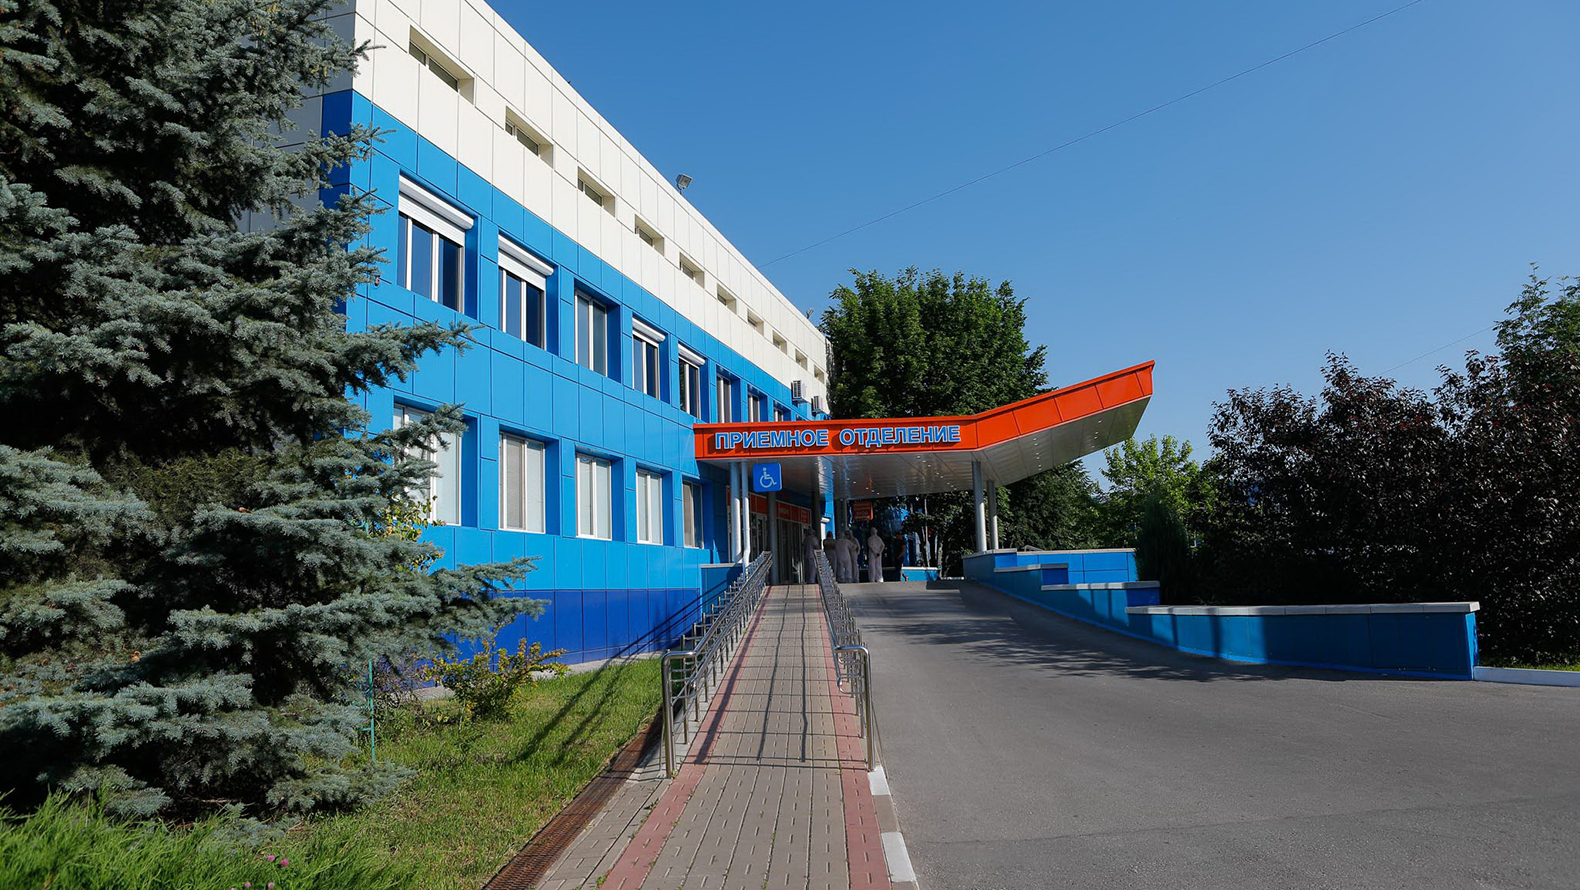 
                      Больница в Белгороде получила предписание за ошибку в документах умершего пациента 
                